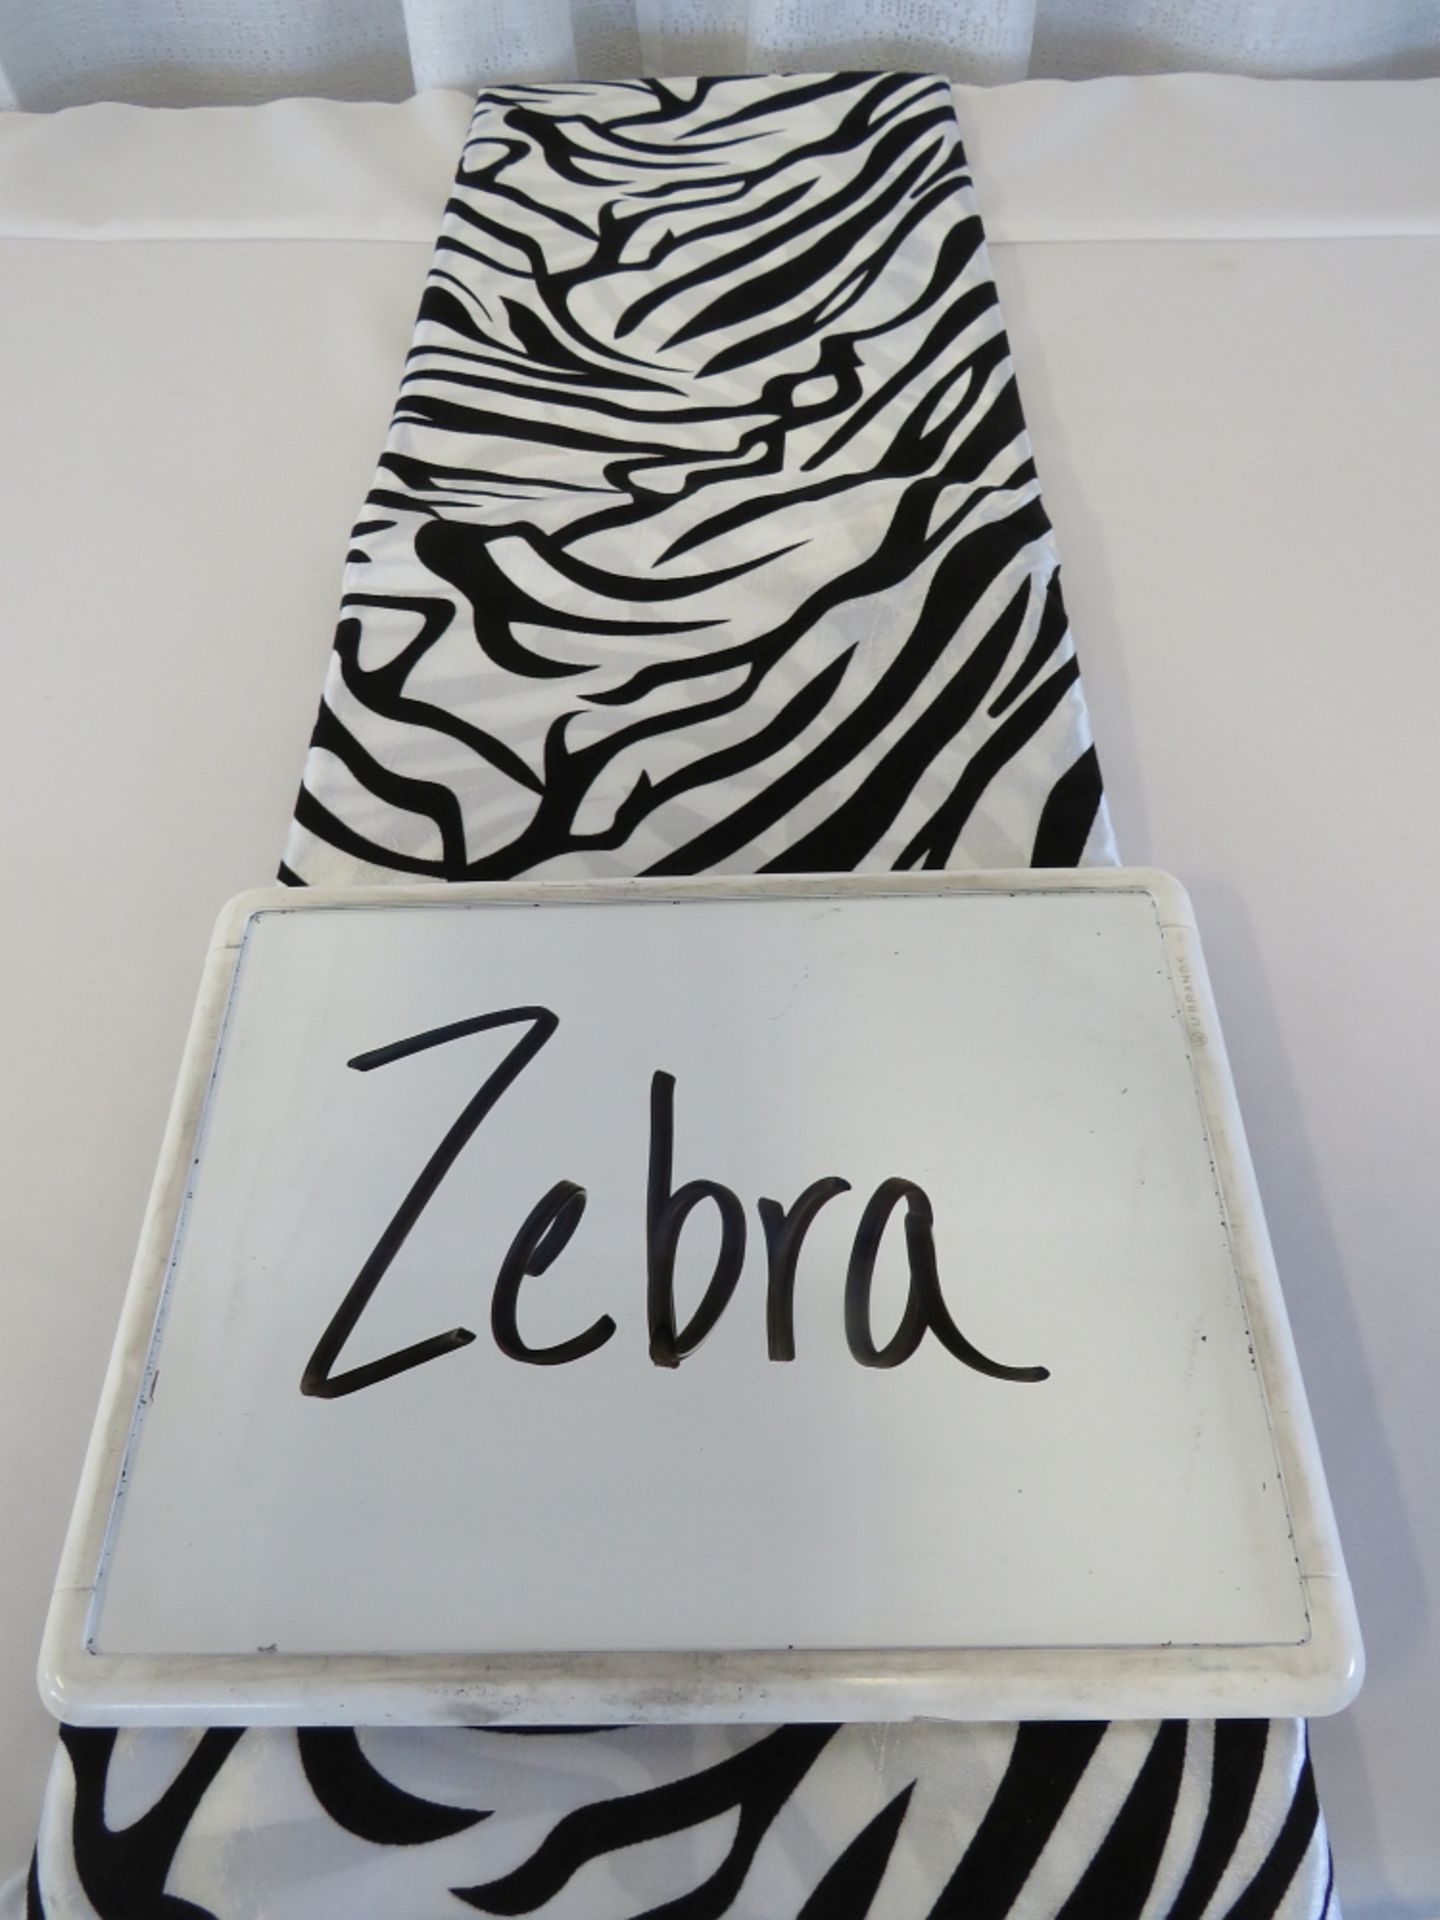 70" x 70" Tablecloth, Zebra